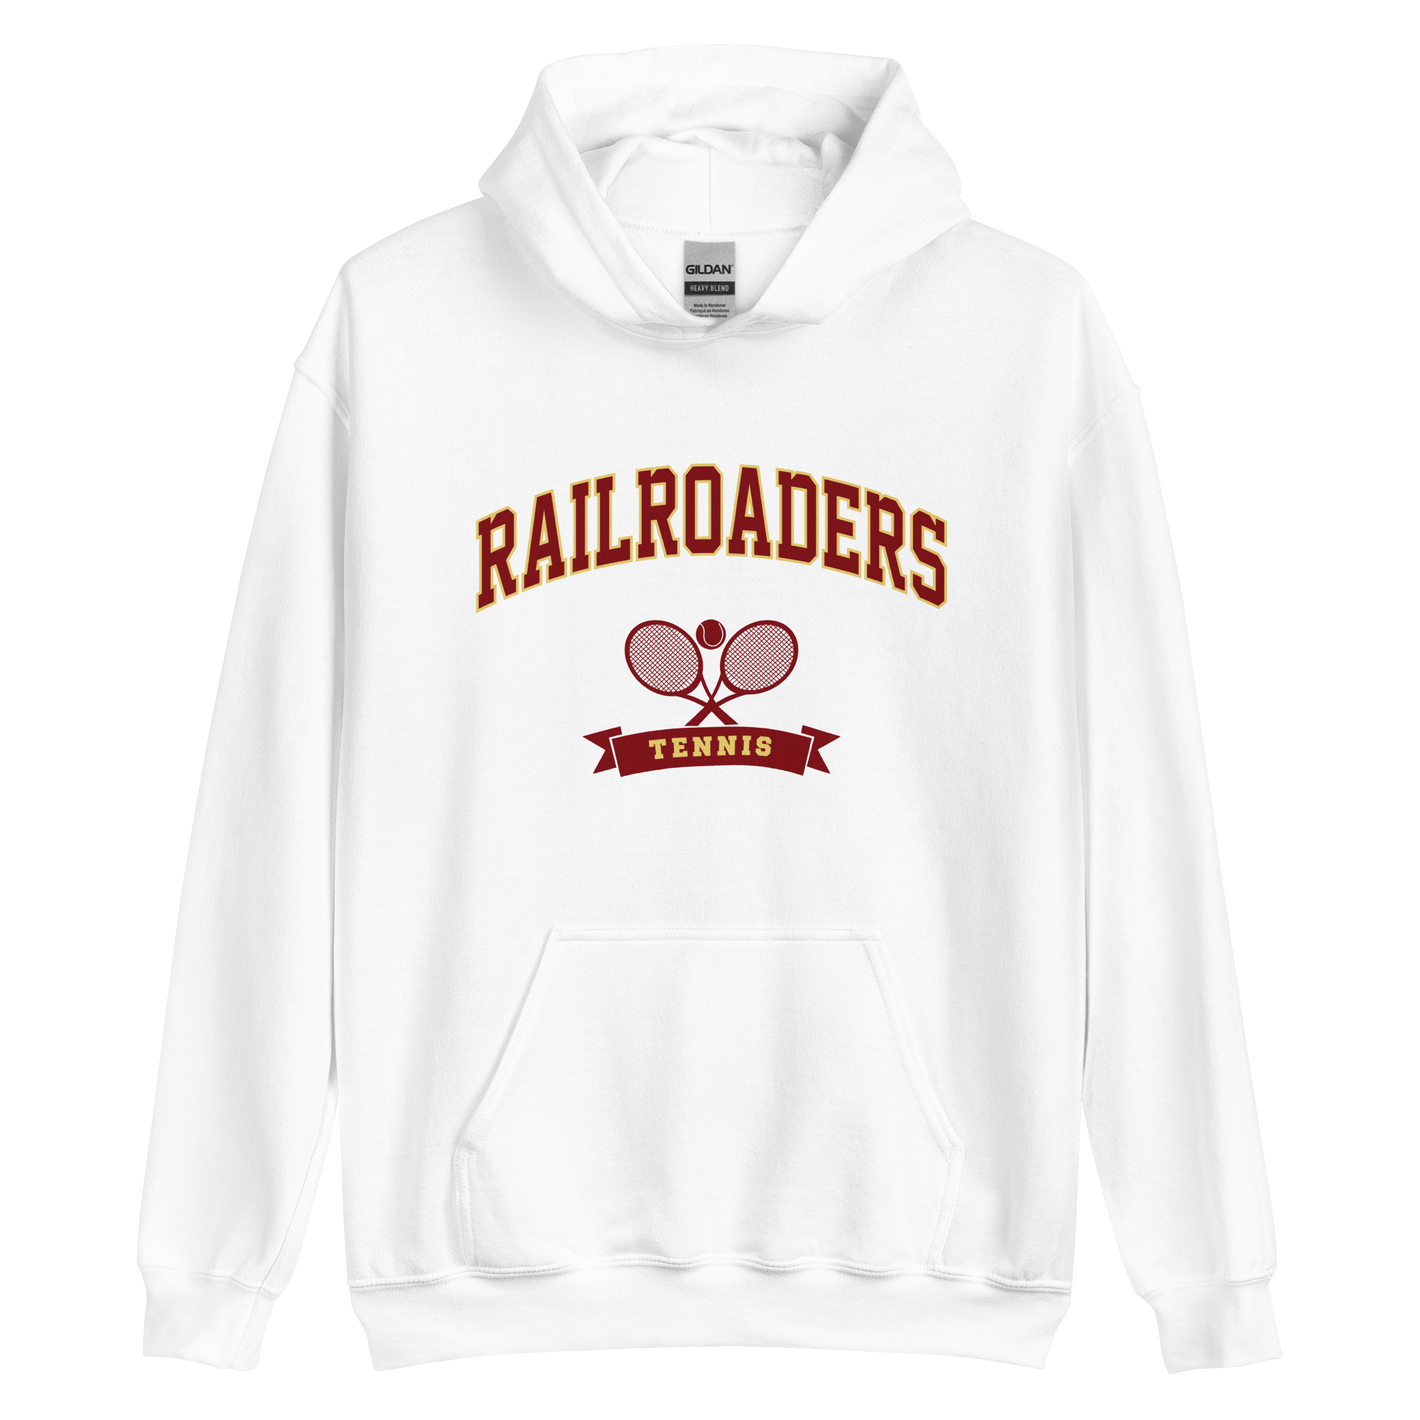 Railroaders Tennis Unisex Hoodie